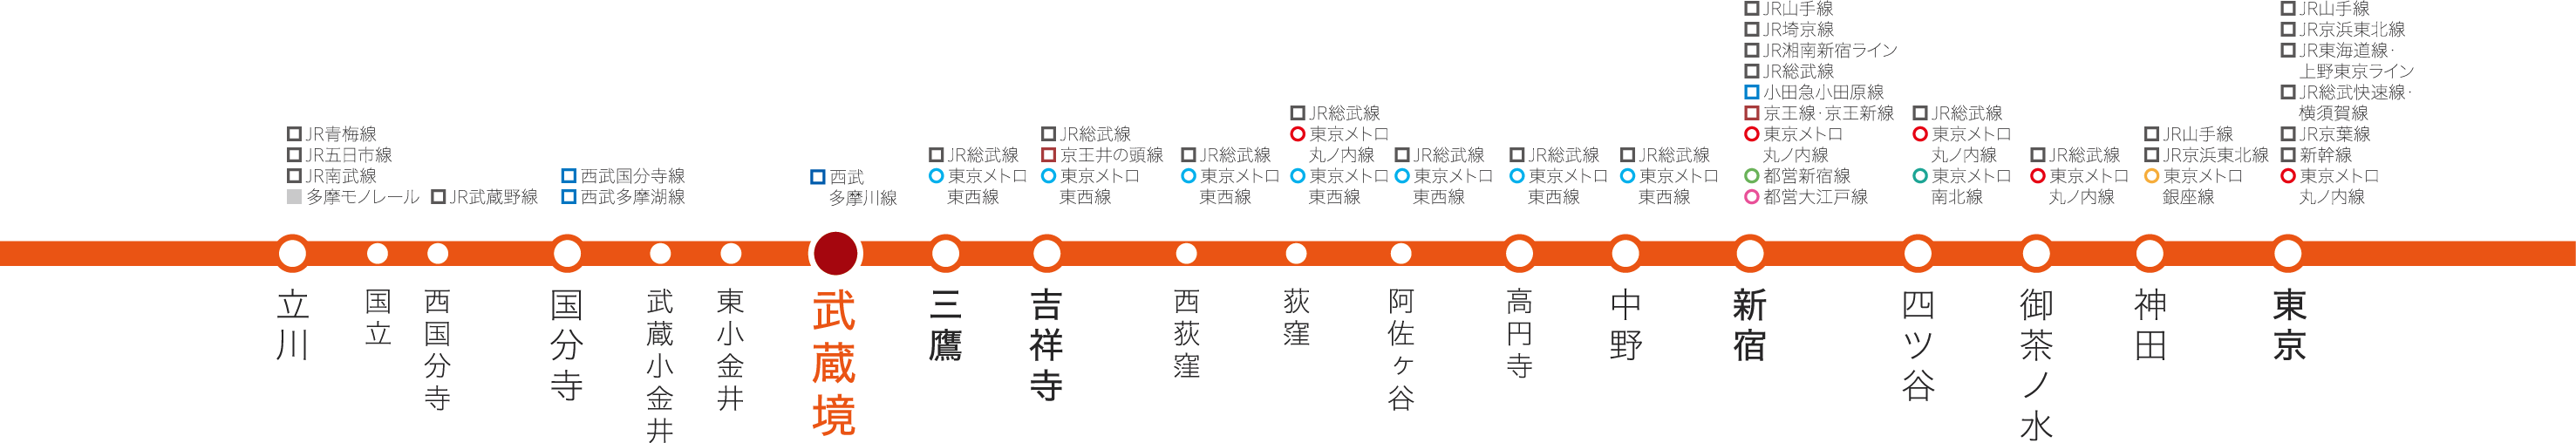 武蔵境駅周辺路線図